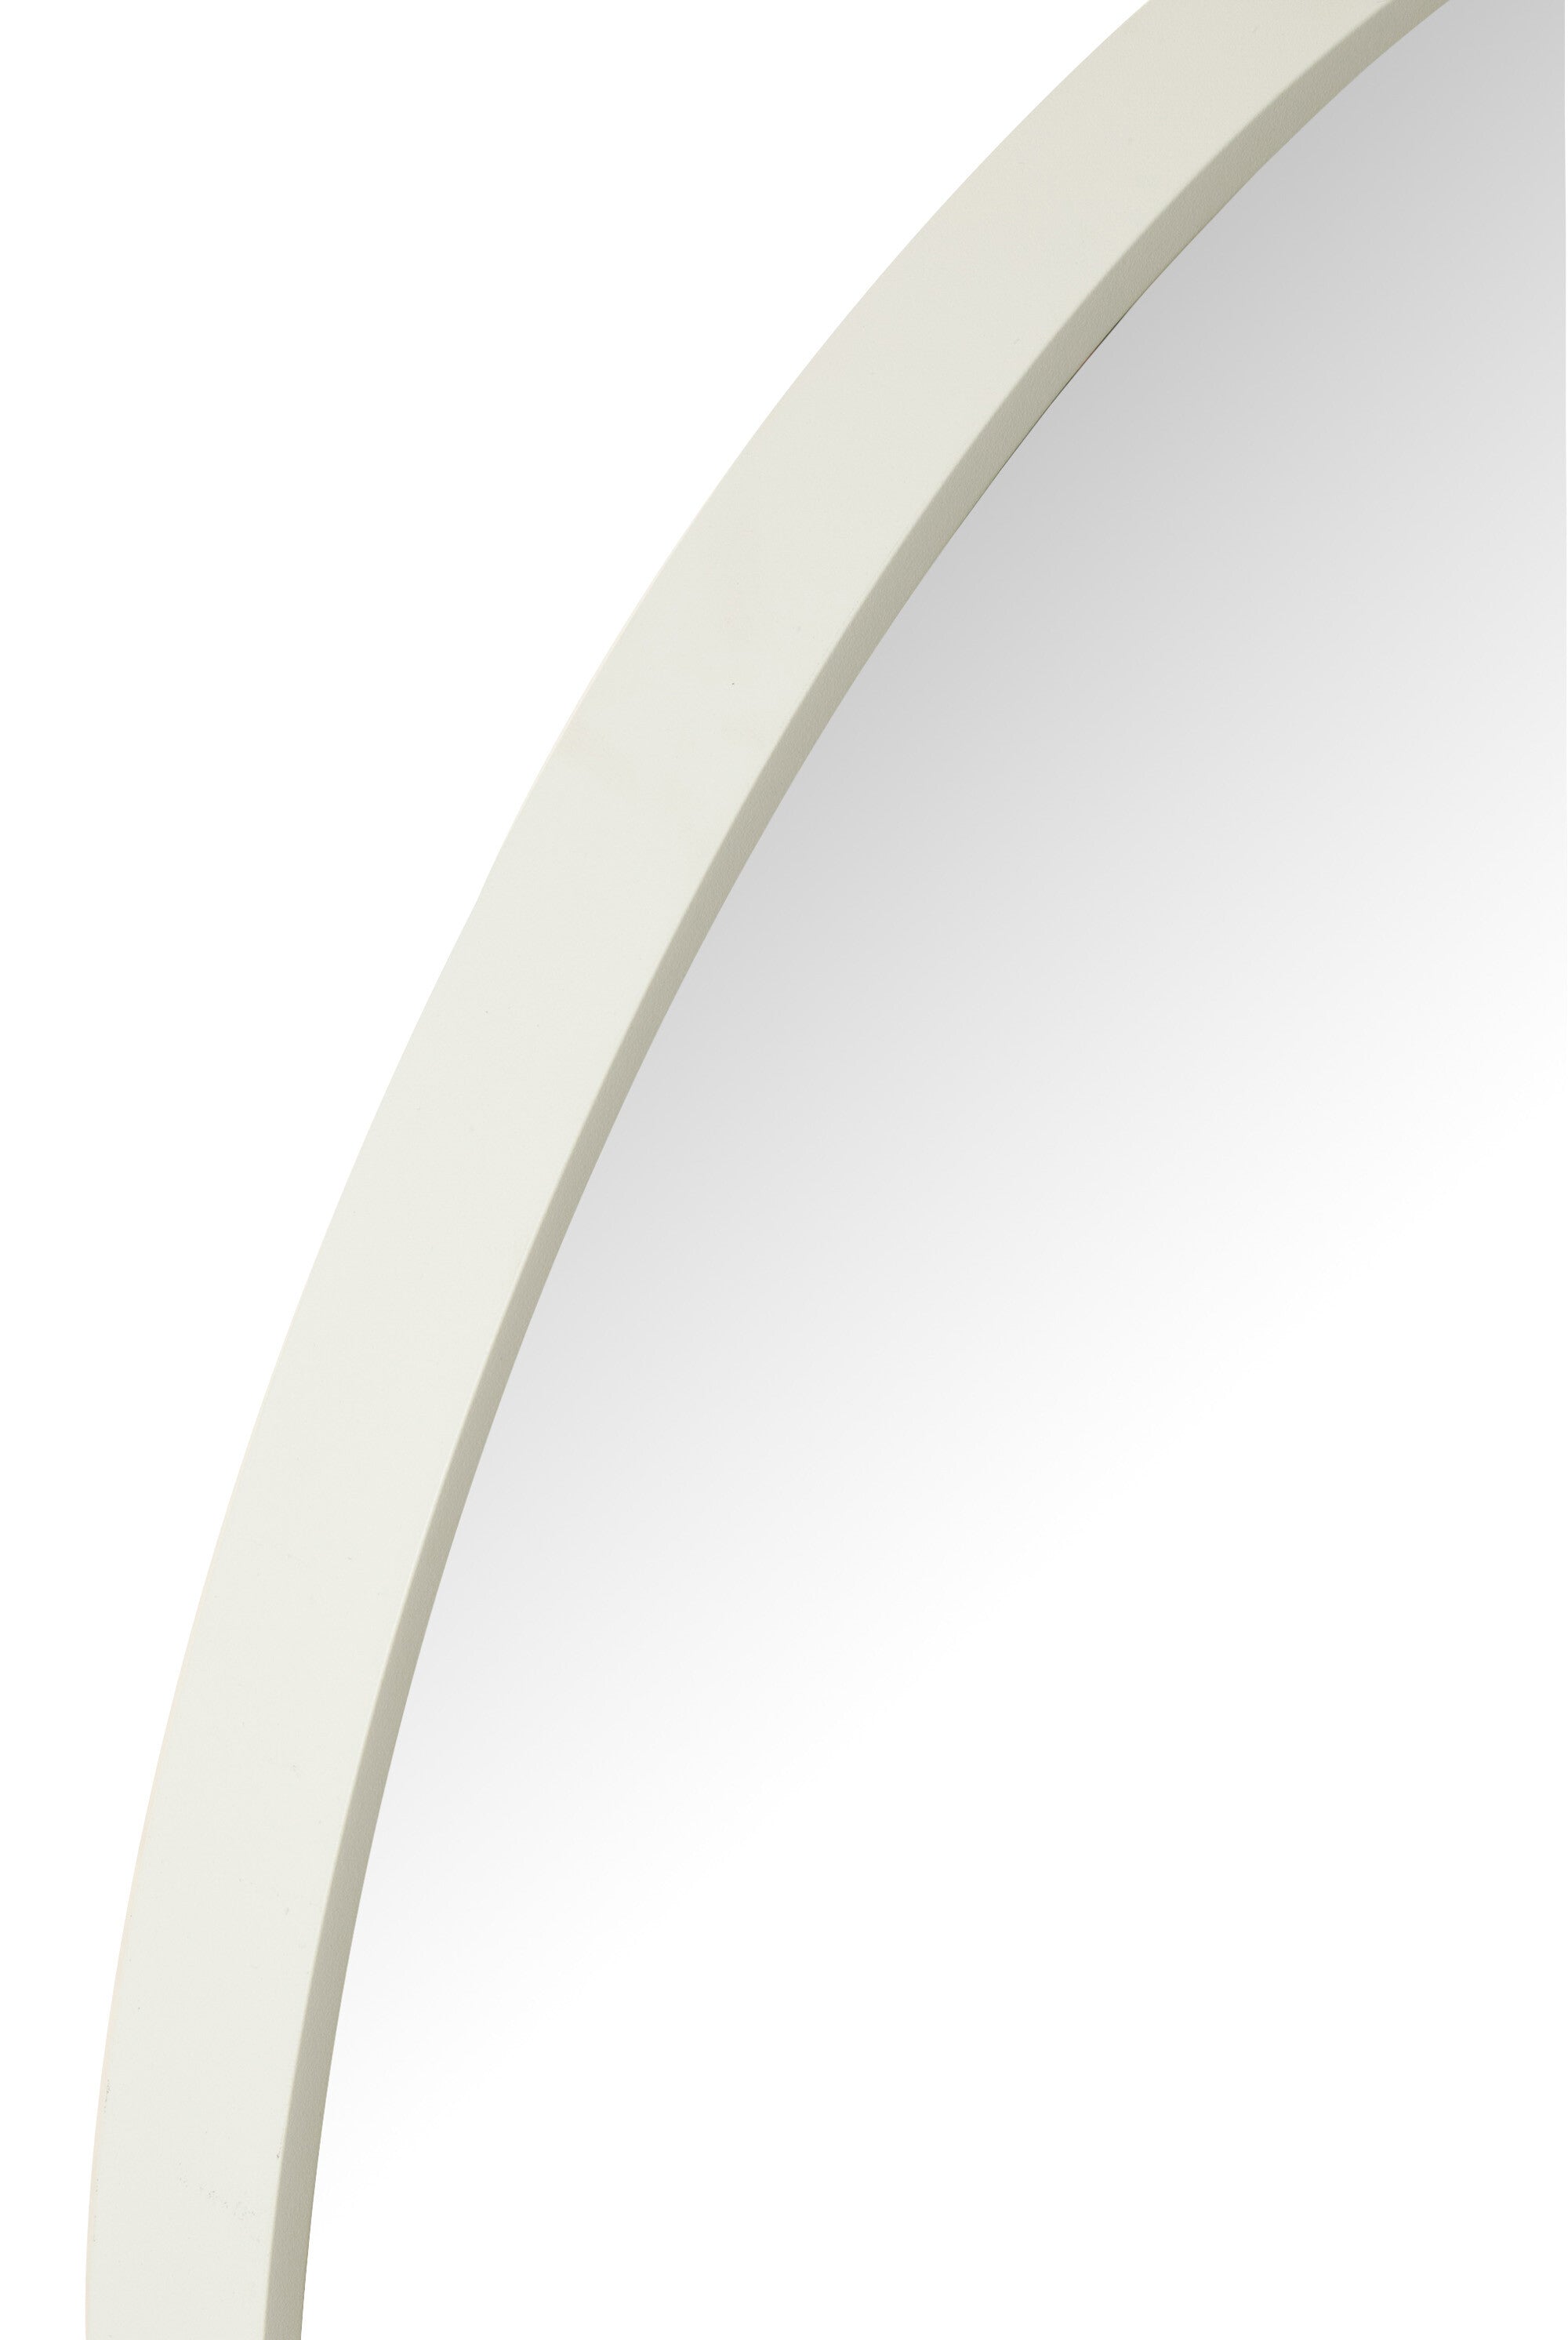 Spiegel Oval Glas/Metall Weiß